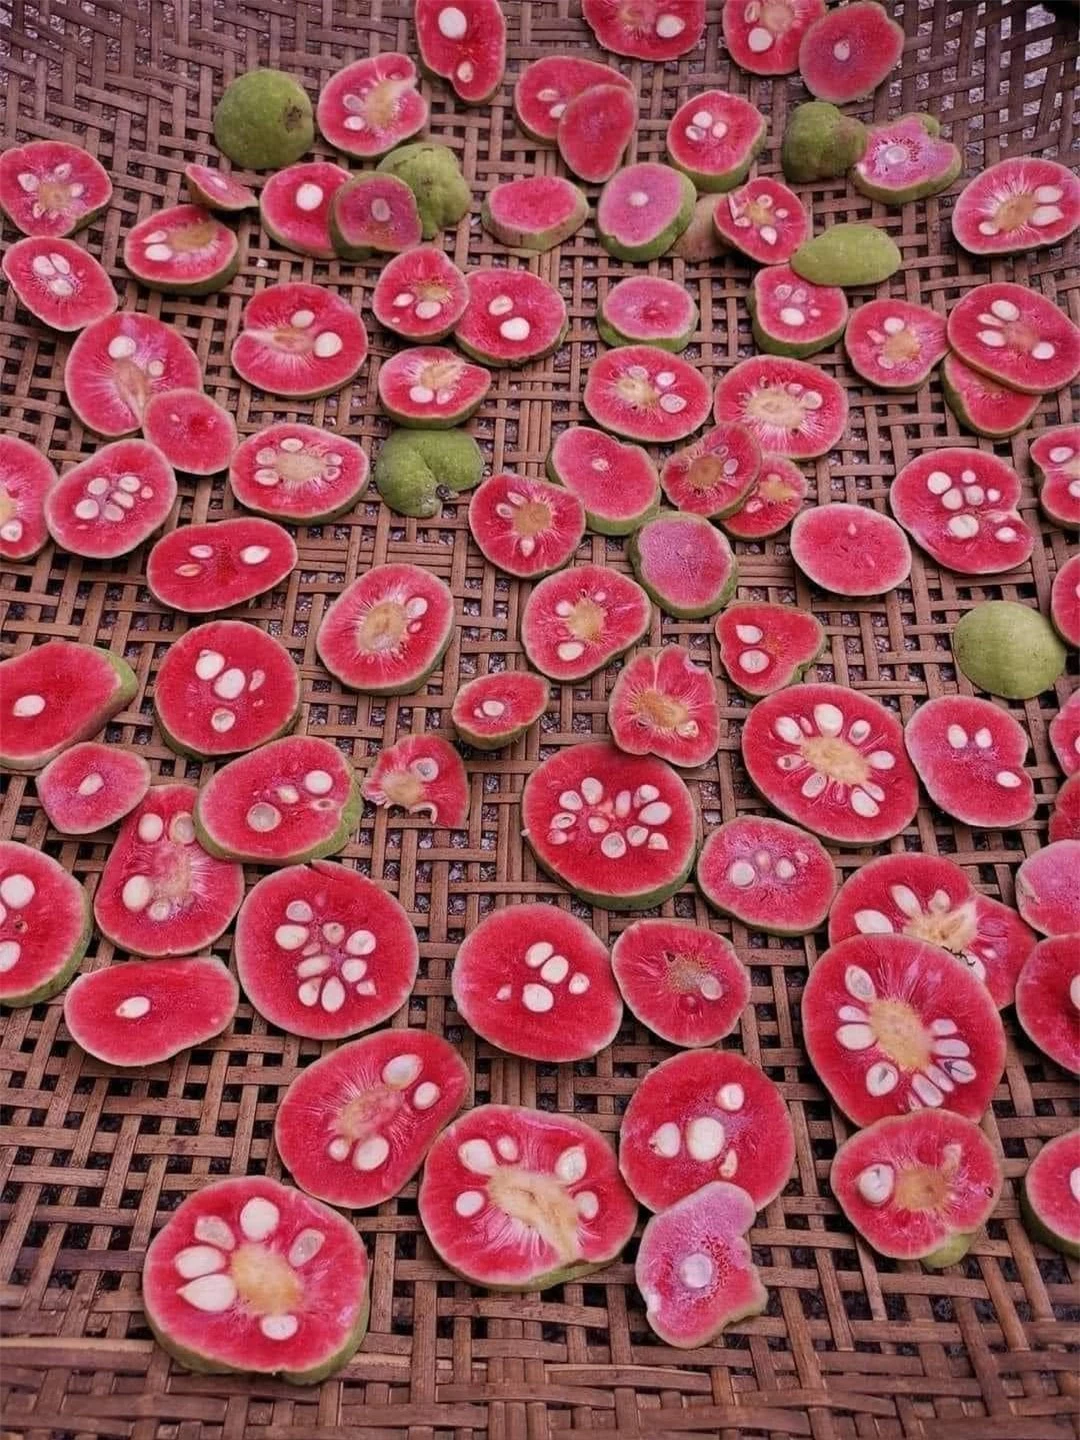 Loại quả vị chua chua, ruột hồng bắt mắt giá ngang trái cây nhập khẩu ở Hà Nội vẫn đắt khách - Ảnh 3.